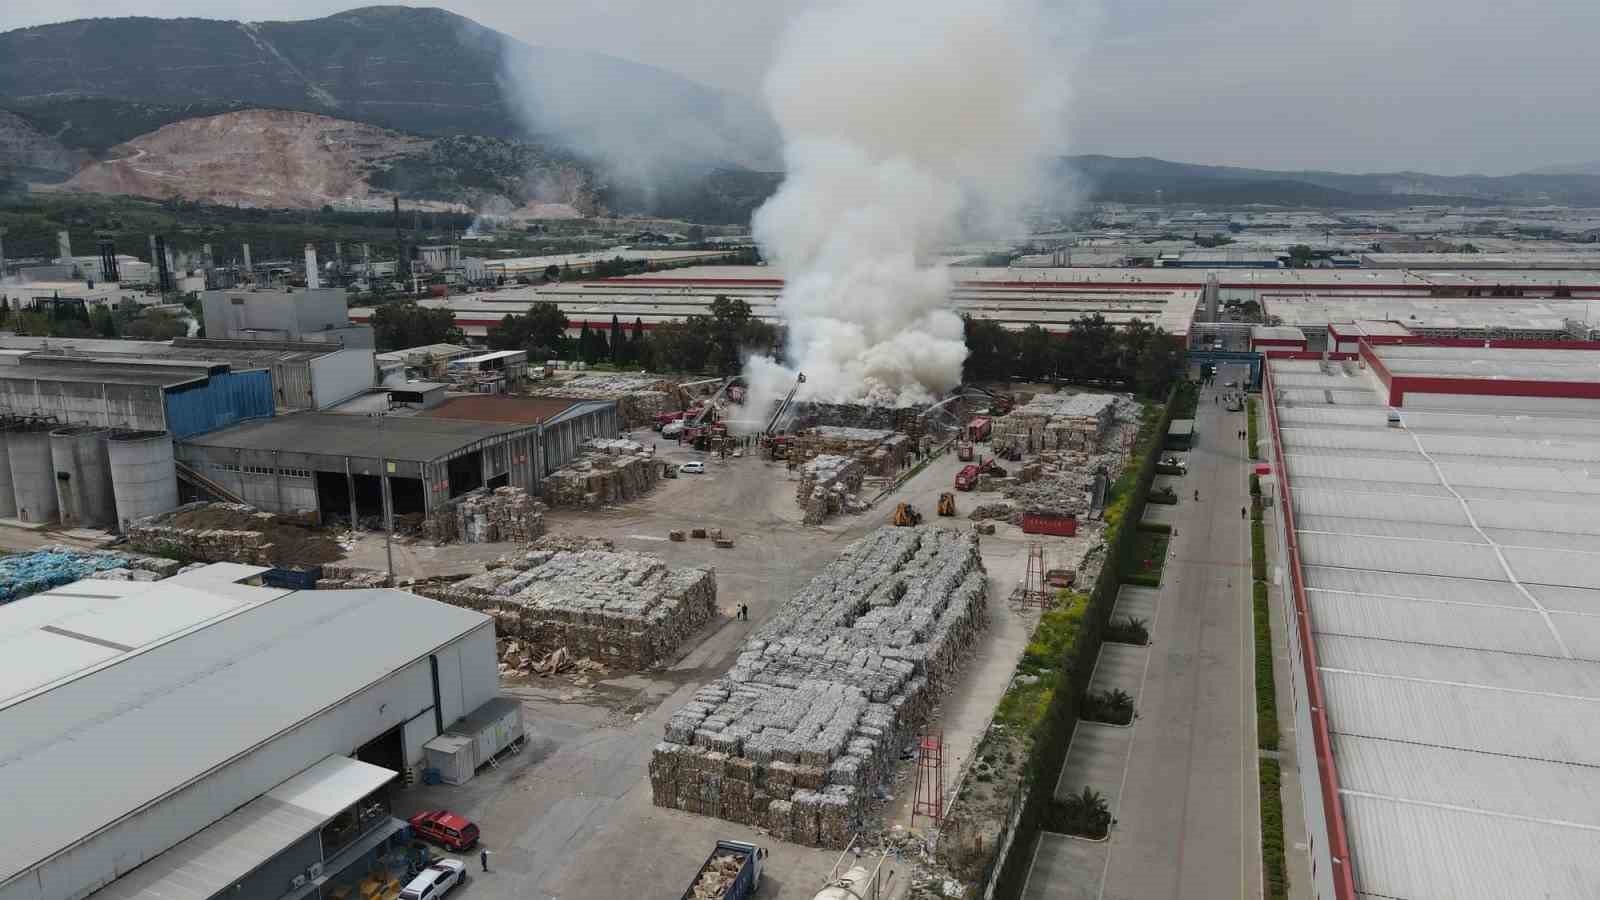 Manisa OSB’deki kağıt fabrikasında büyük yangın